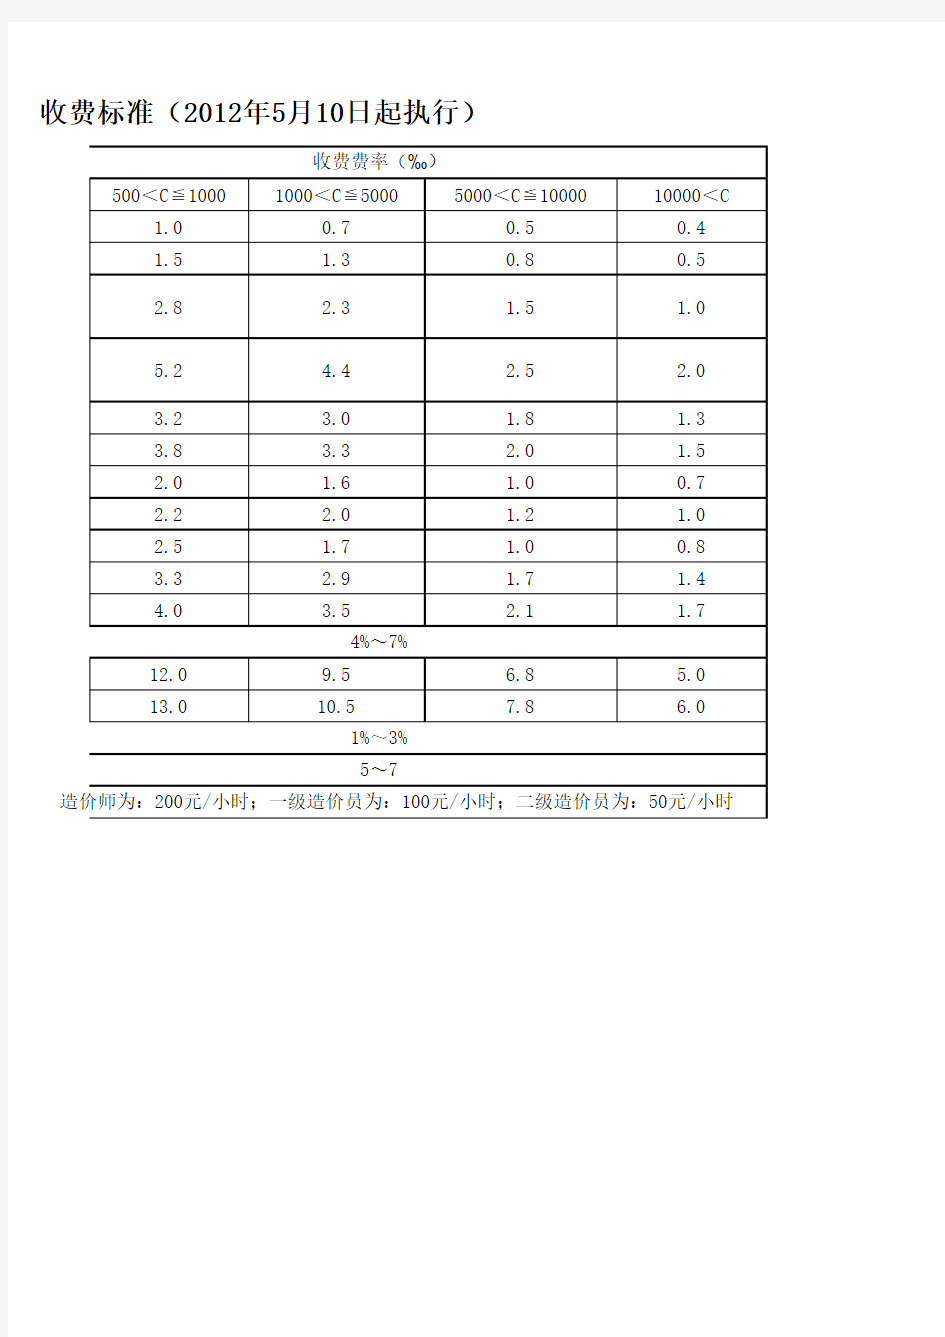 黔房价(2012)86号文 附件1：贵州省建设工程造价咨询服务收费项目和收费标准